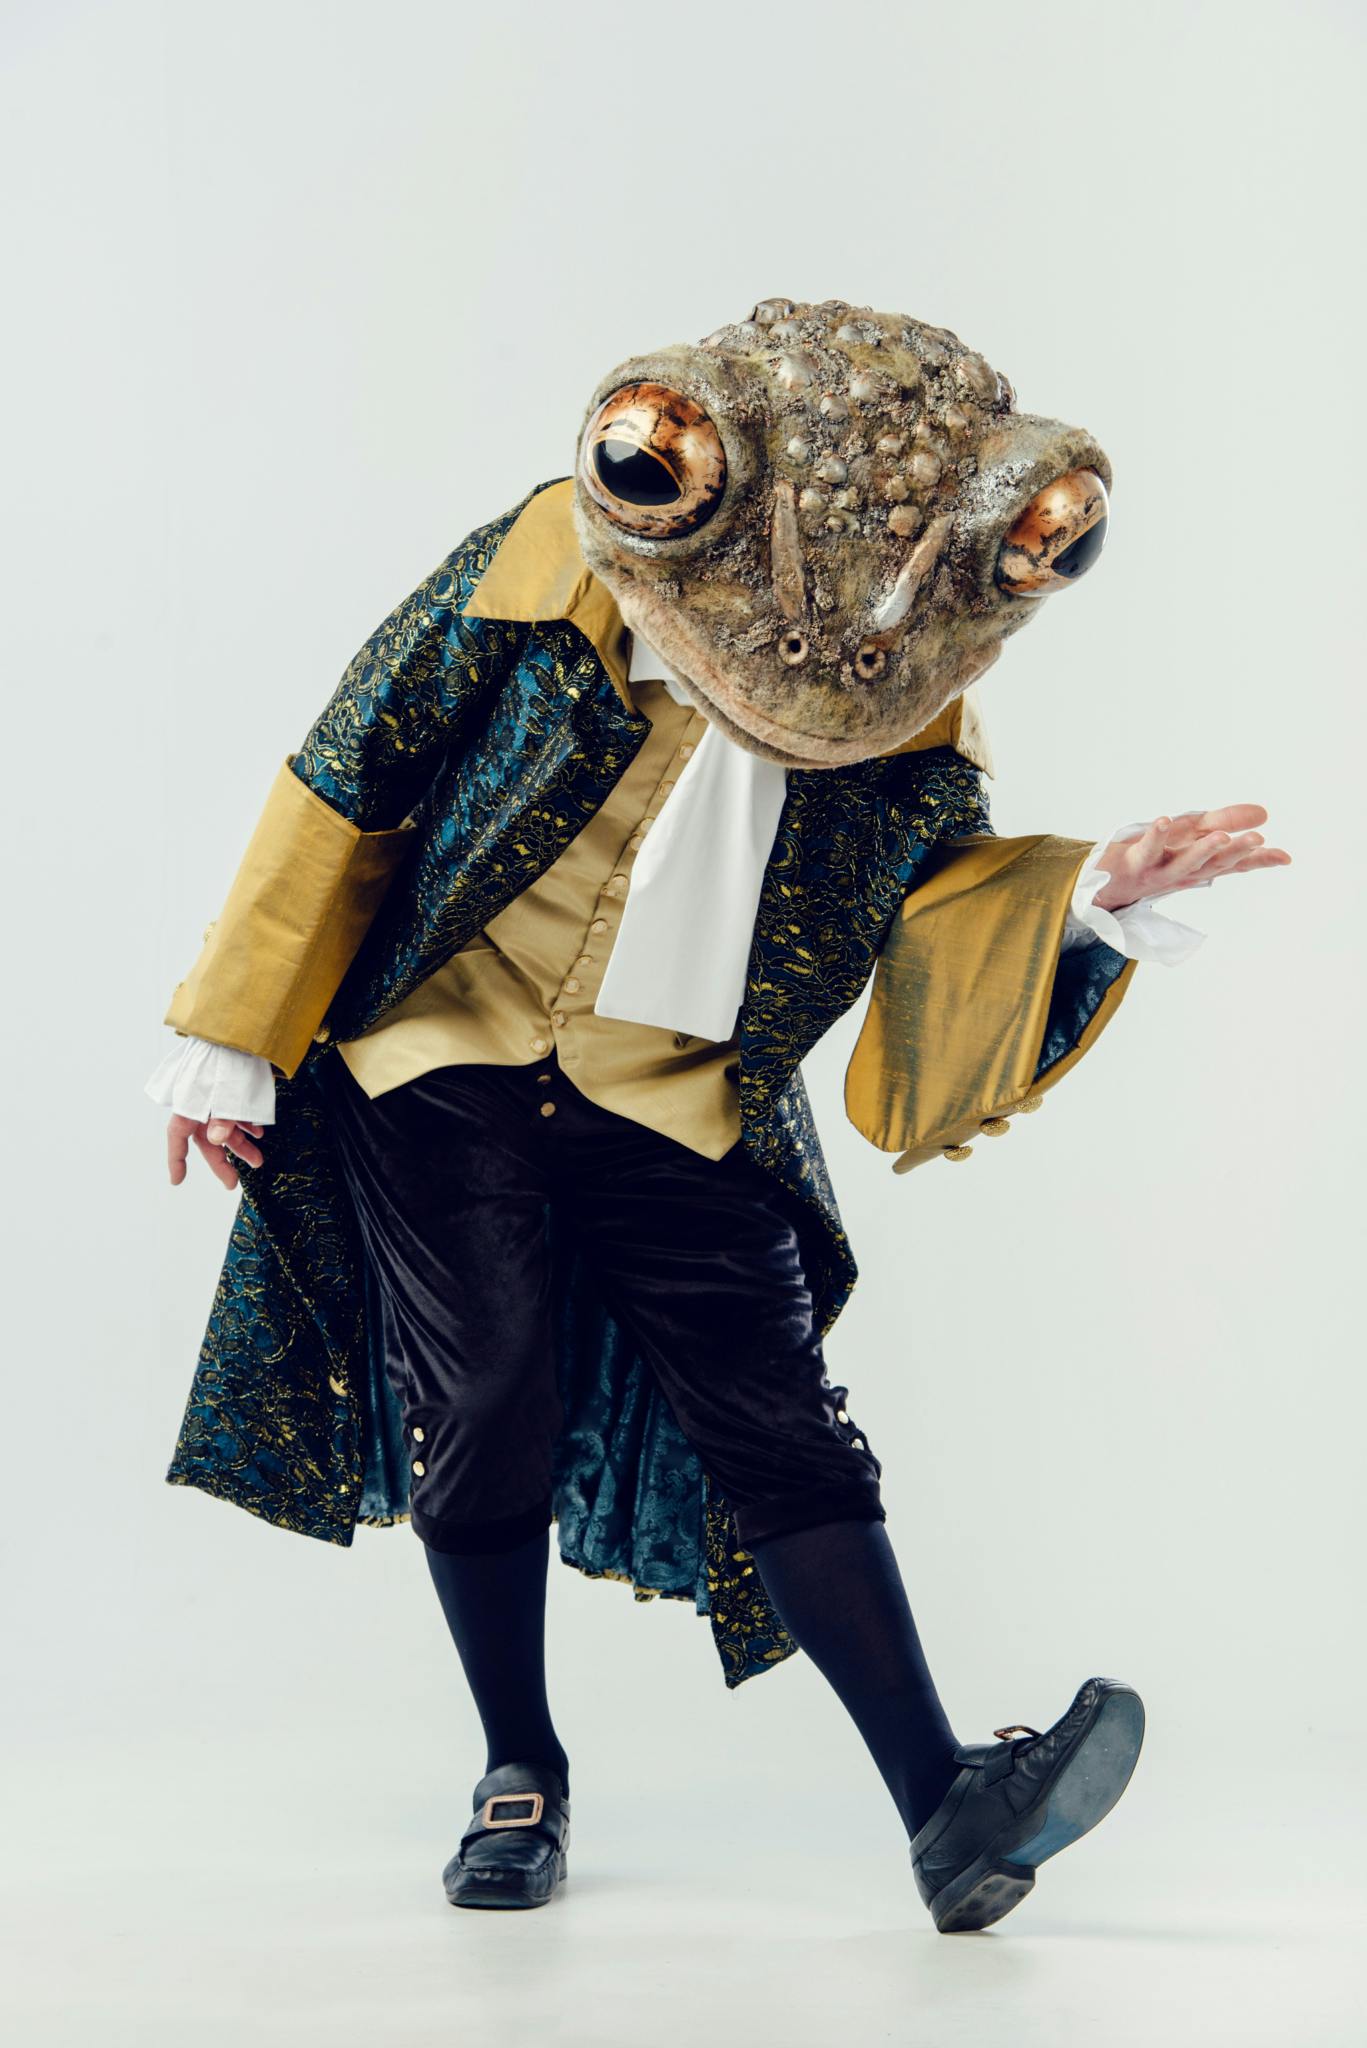 Frog costume by Hannah Mc Arthur